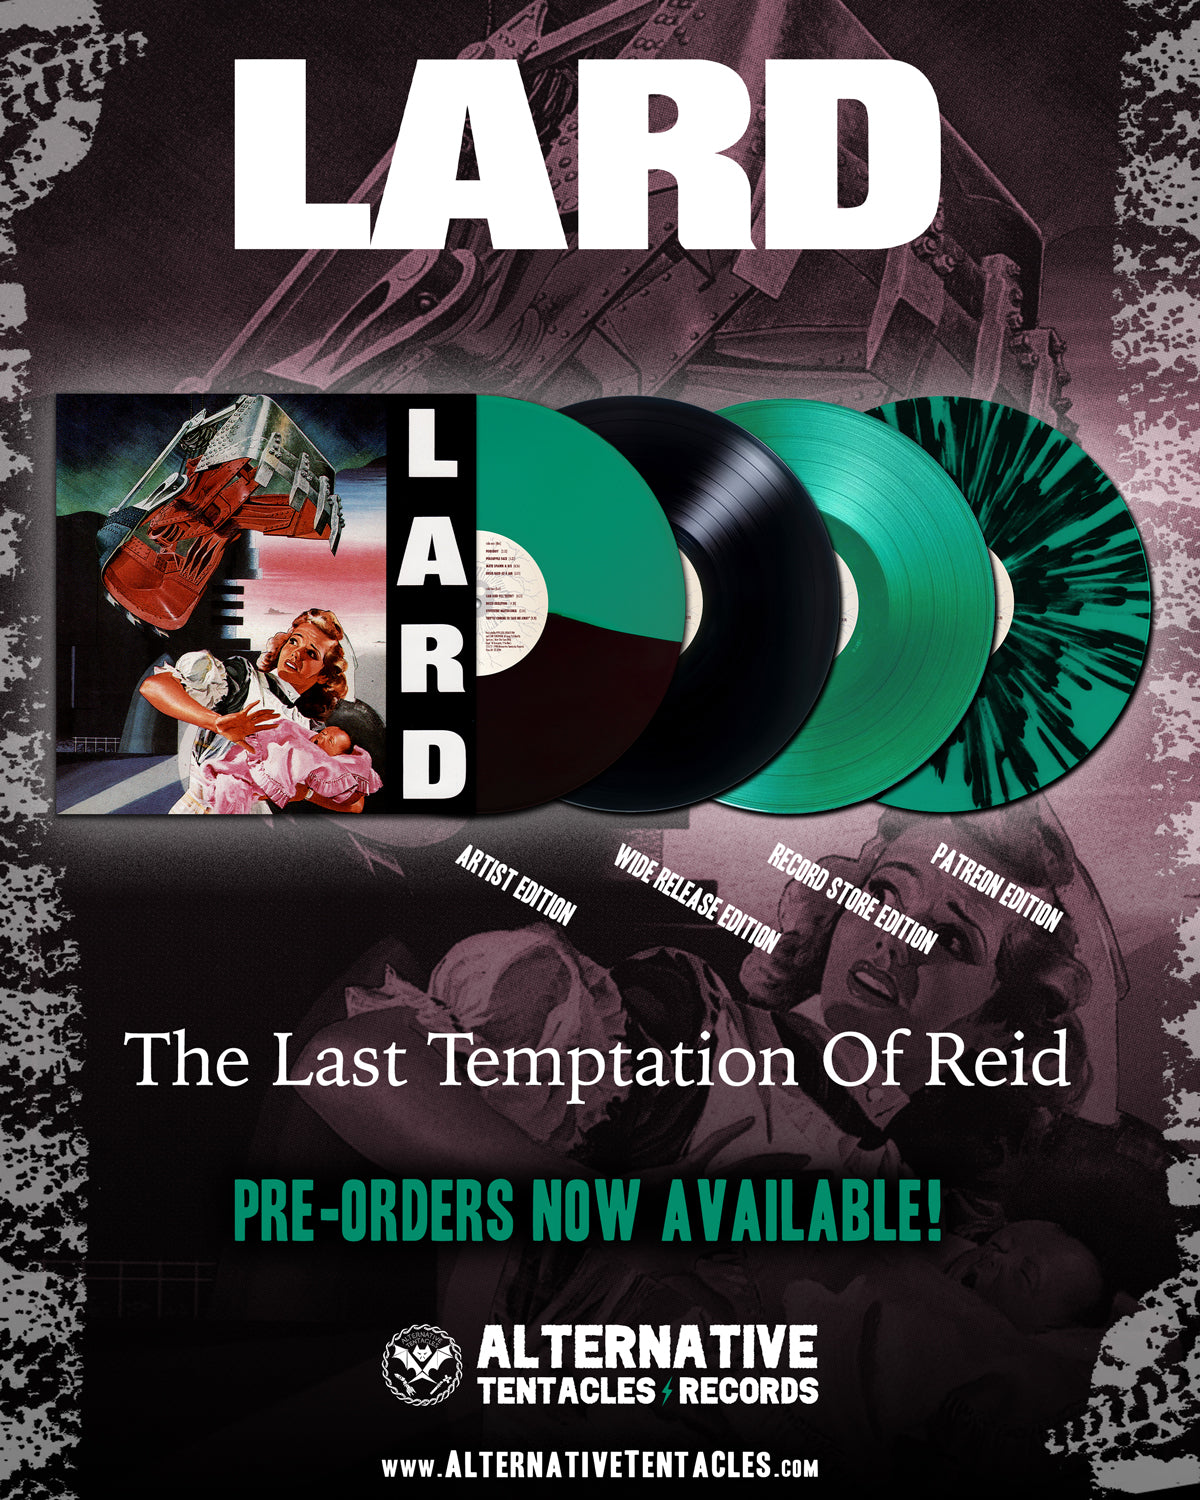 PRE-ORDER LARD "THE LAST TEMPTATION OF REID"